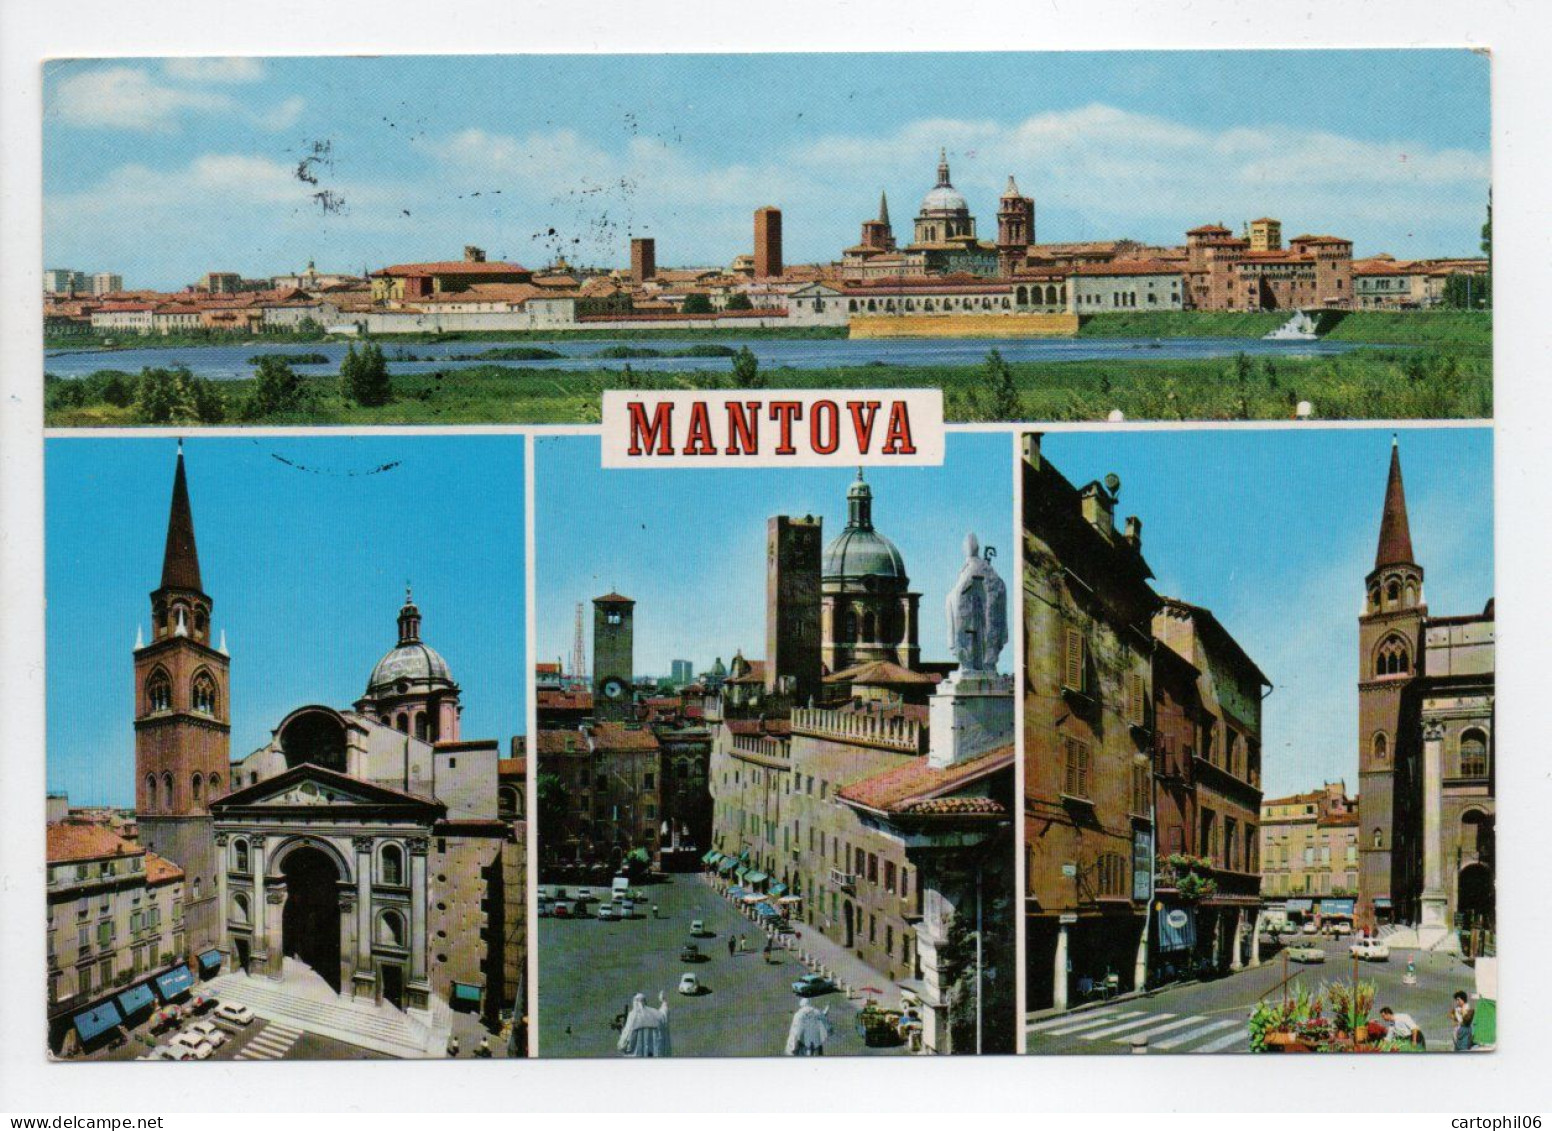 - Carte Postale MANTOVA (Italie) Pour SAINT-VIATRE (France) 19.4.1990 - TAXE A ETUDIER - - Impuestos